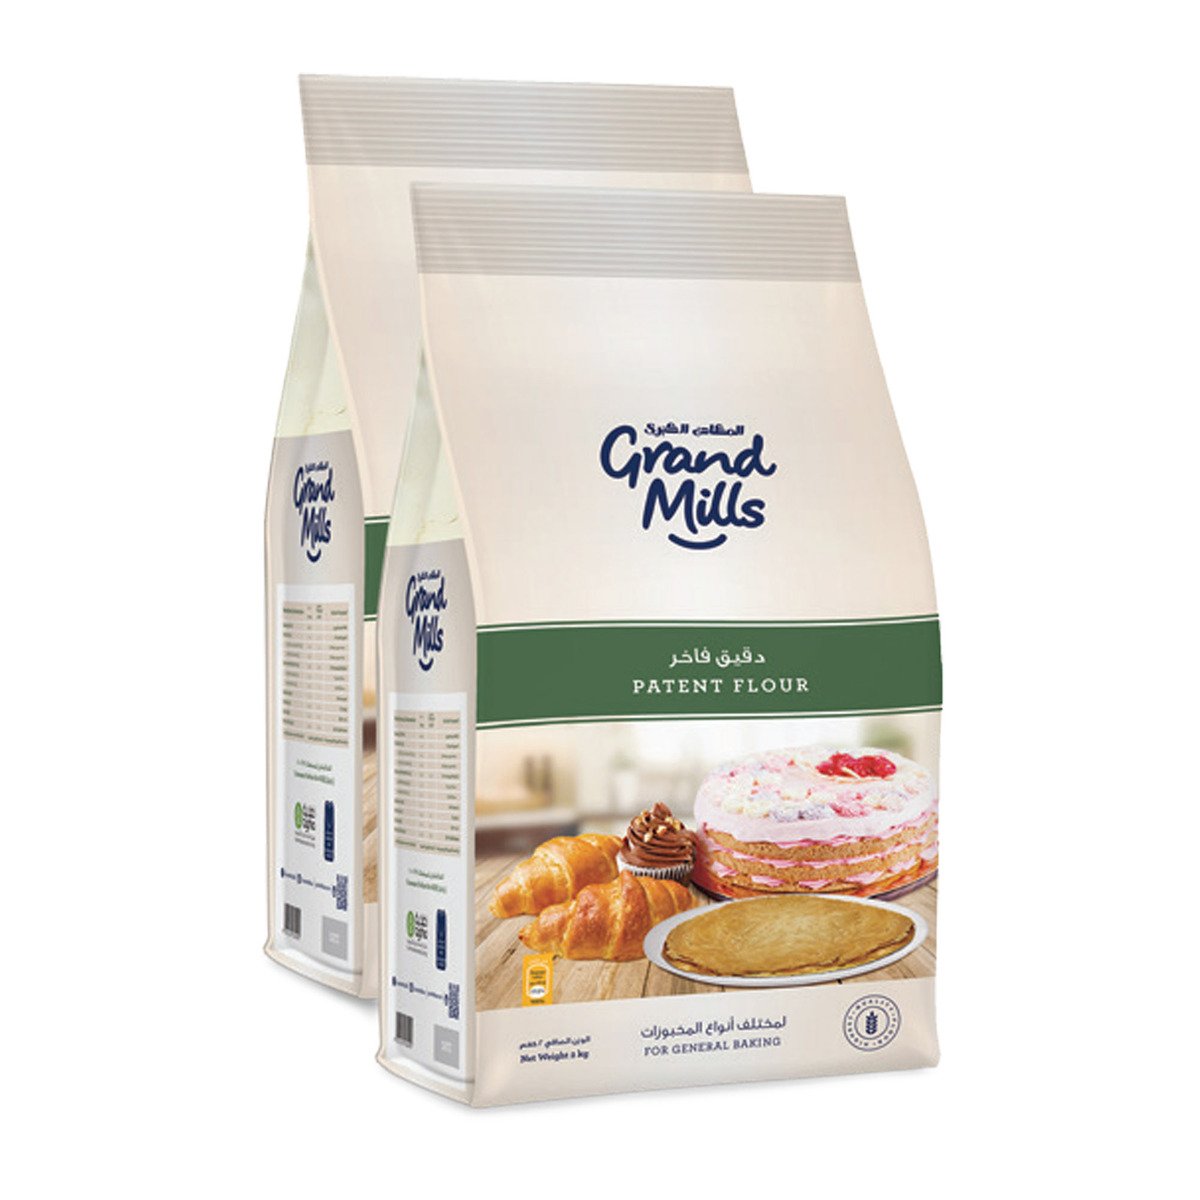 Grand Mills Patent Flour 2 x 2 kg